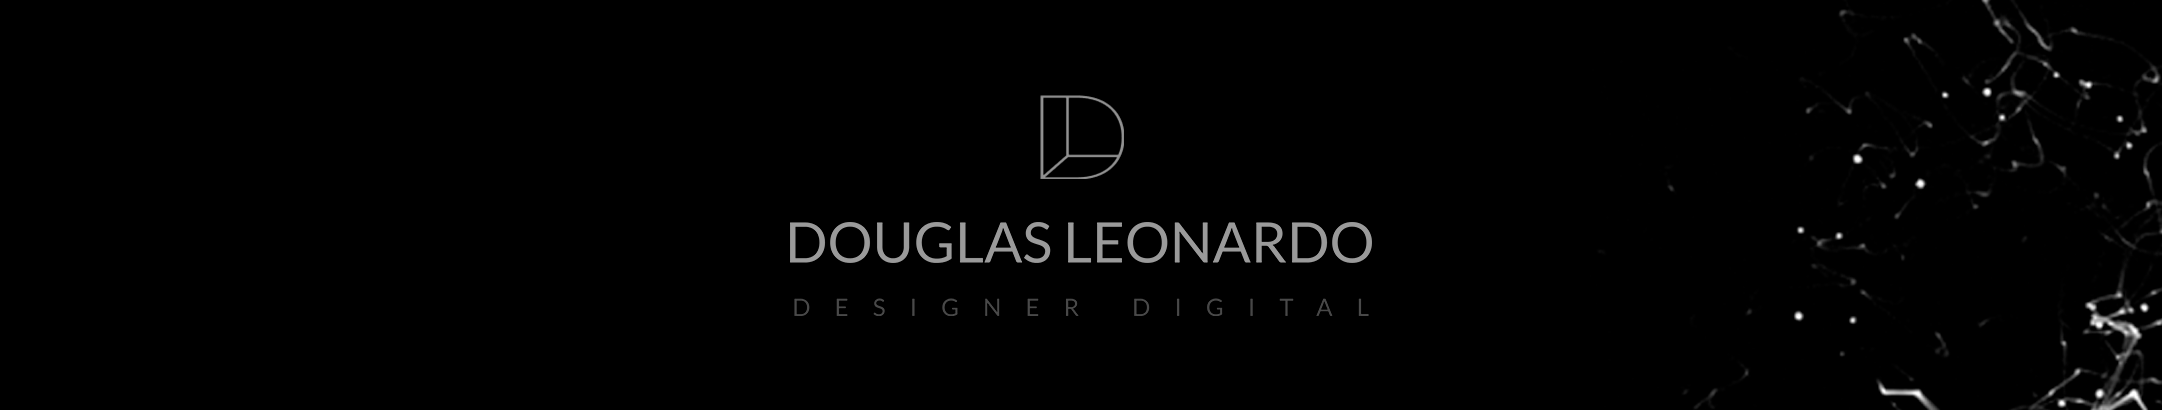 Douglas Leonardo's profile banner